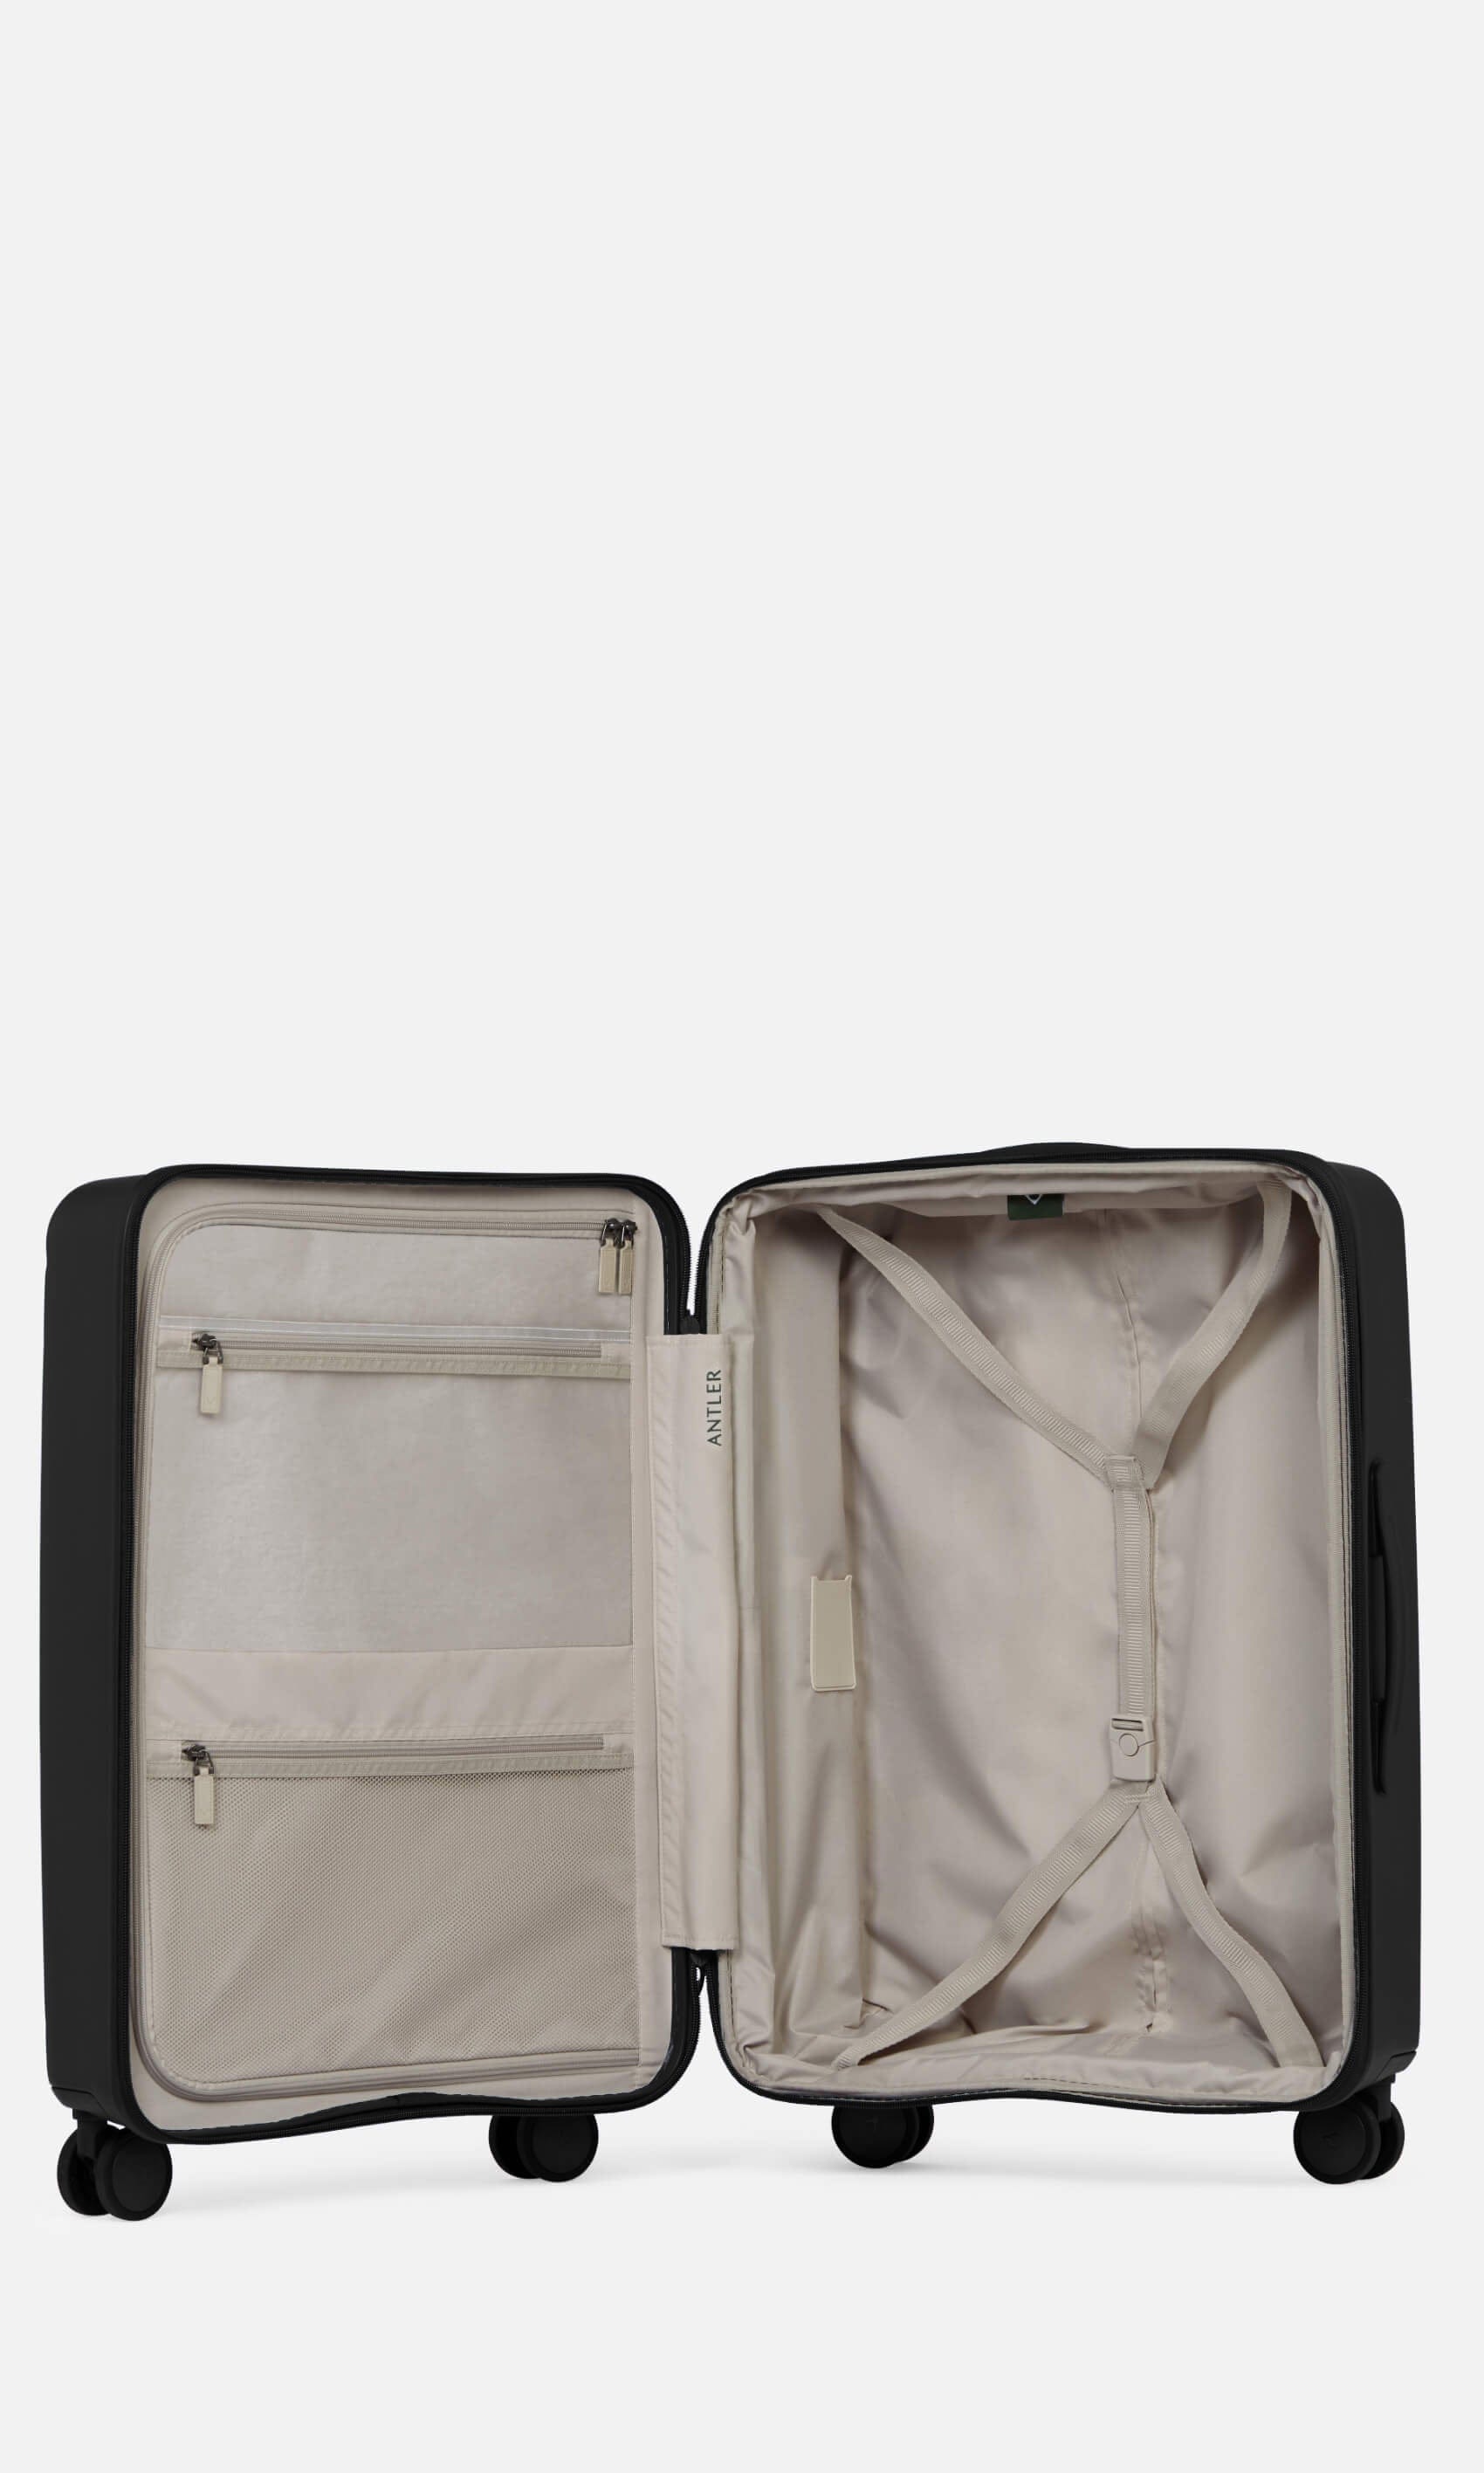 Antler Luggage -  Stamford medium in midnight black - Hard Suitcases Stamford Medium Suitcase Black | Hard Luggage | Antler UK